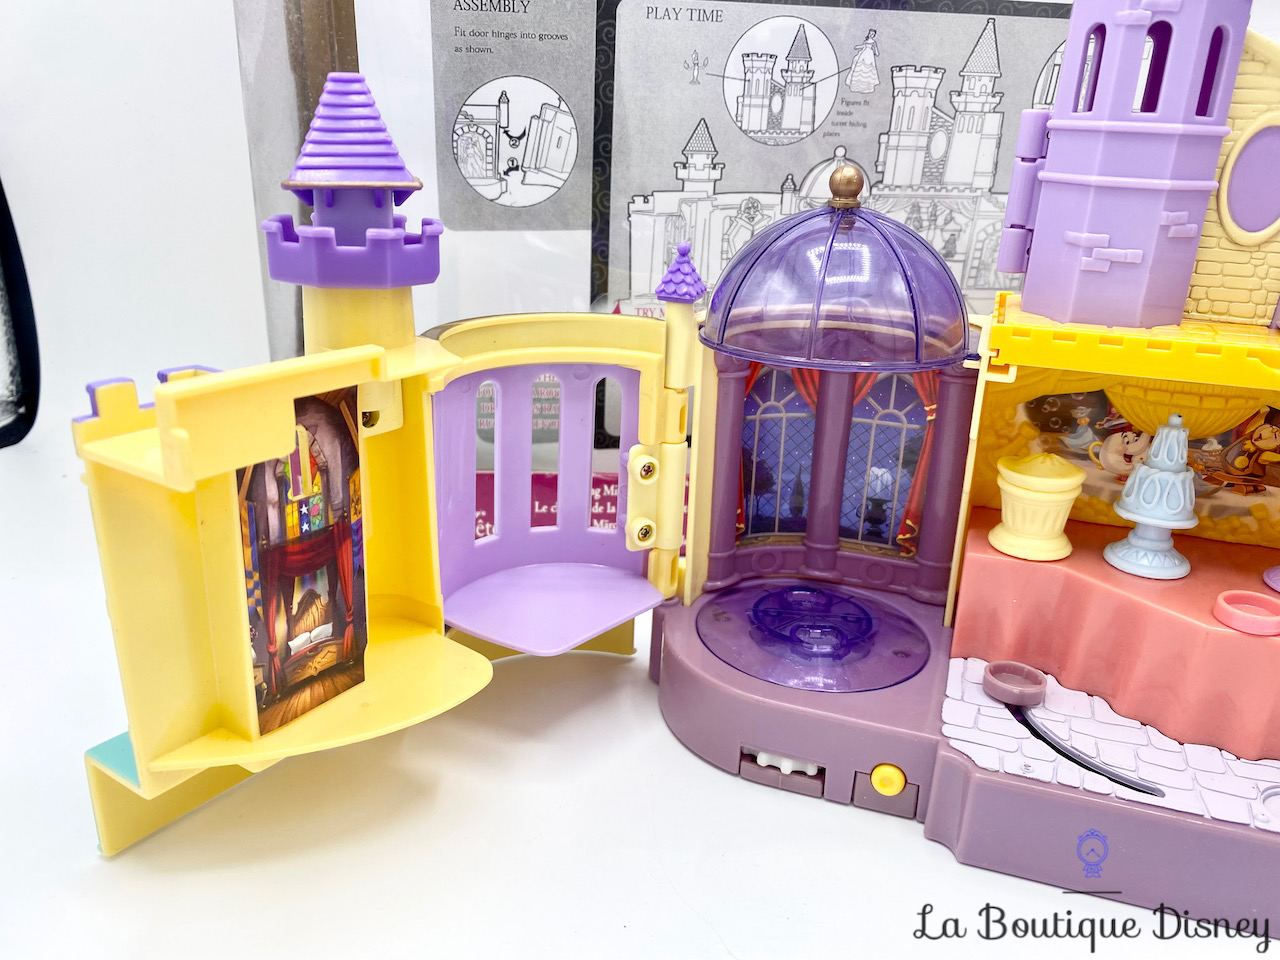 Chateau la Belle et la Bête Polly Pocket 1997 - jouets rétro jeux de  société figurines et objets vintage